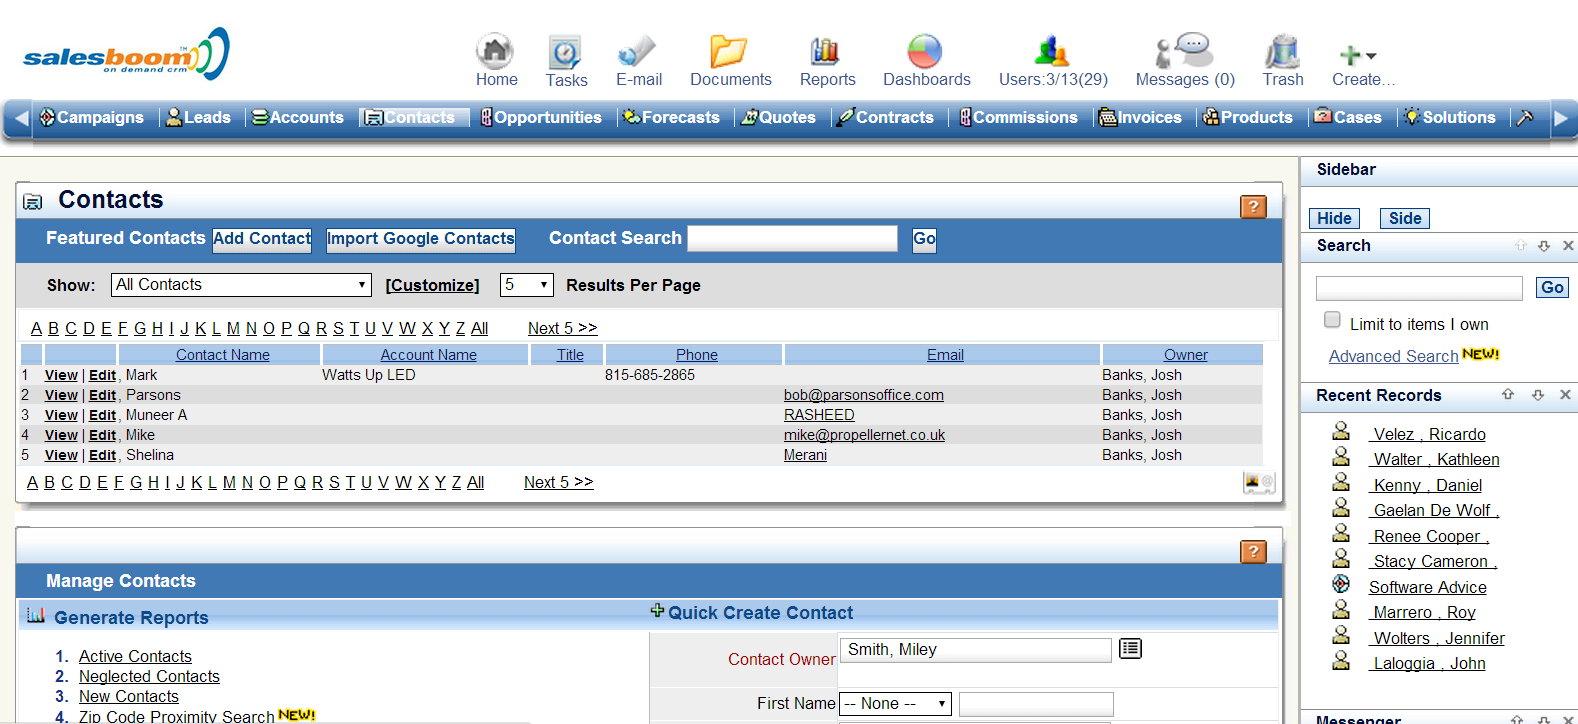 Sales Contacts Screenshots | Salesboom Cloud CRM